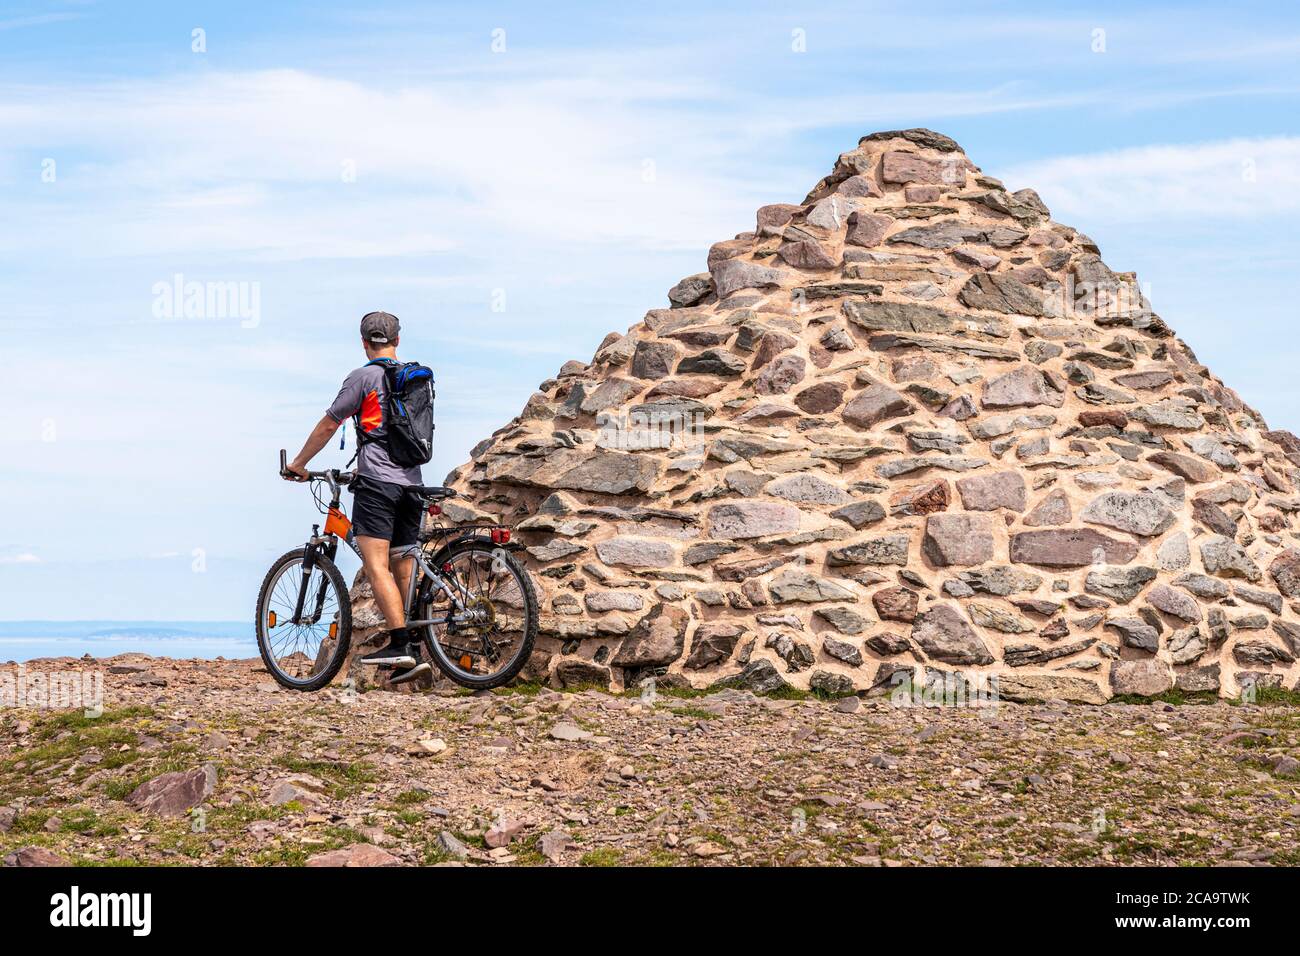 Parque Nacional Exmoor - un ciclista de montaña disfrutando de la vista desde el cairn marcando el punto más alto de Exmoor, Dunkery Beacon 1705 pies 520 metros, Som Foto de stock